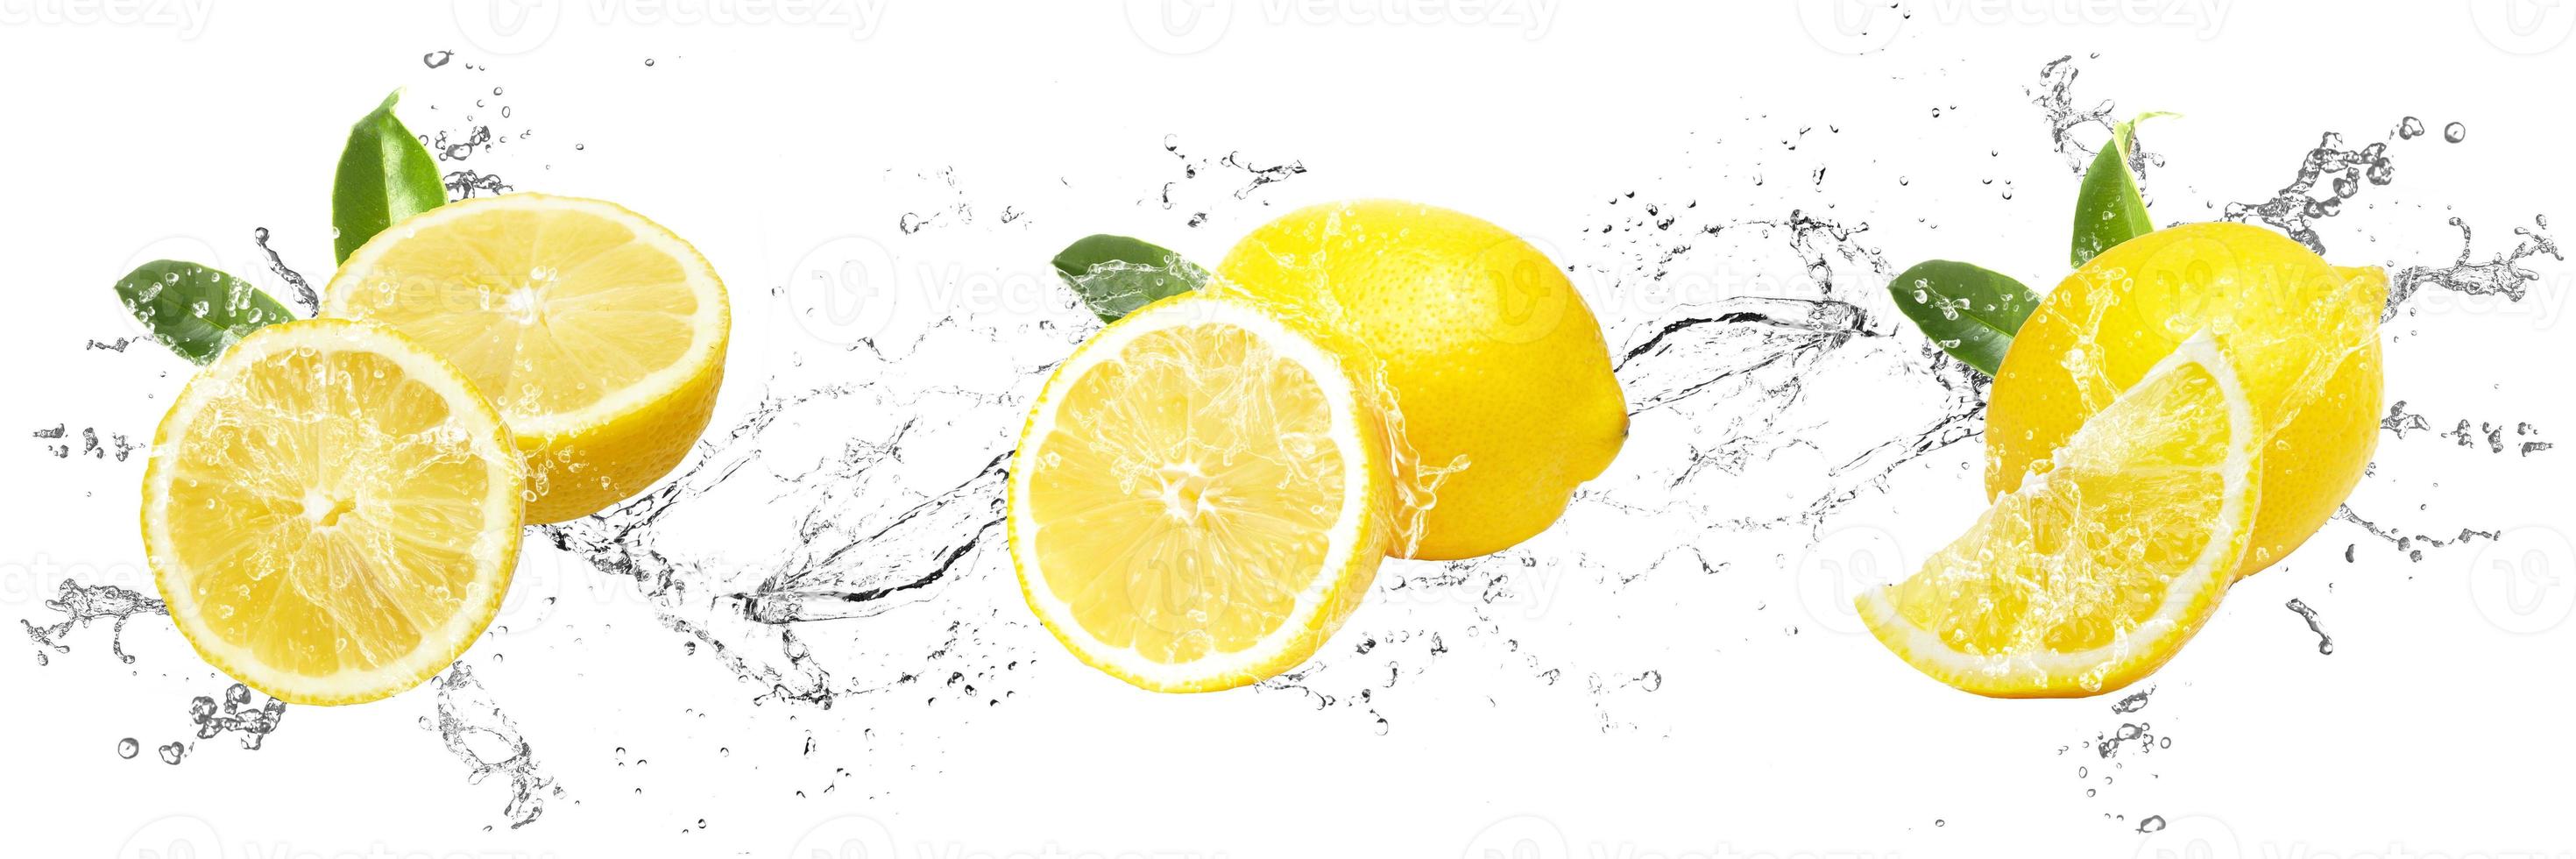 Fresh Lemons with water splash on isolated white background photo